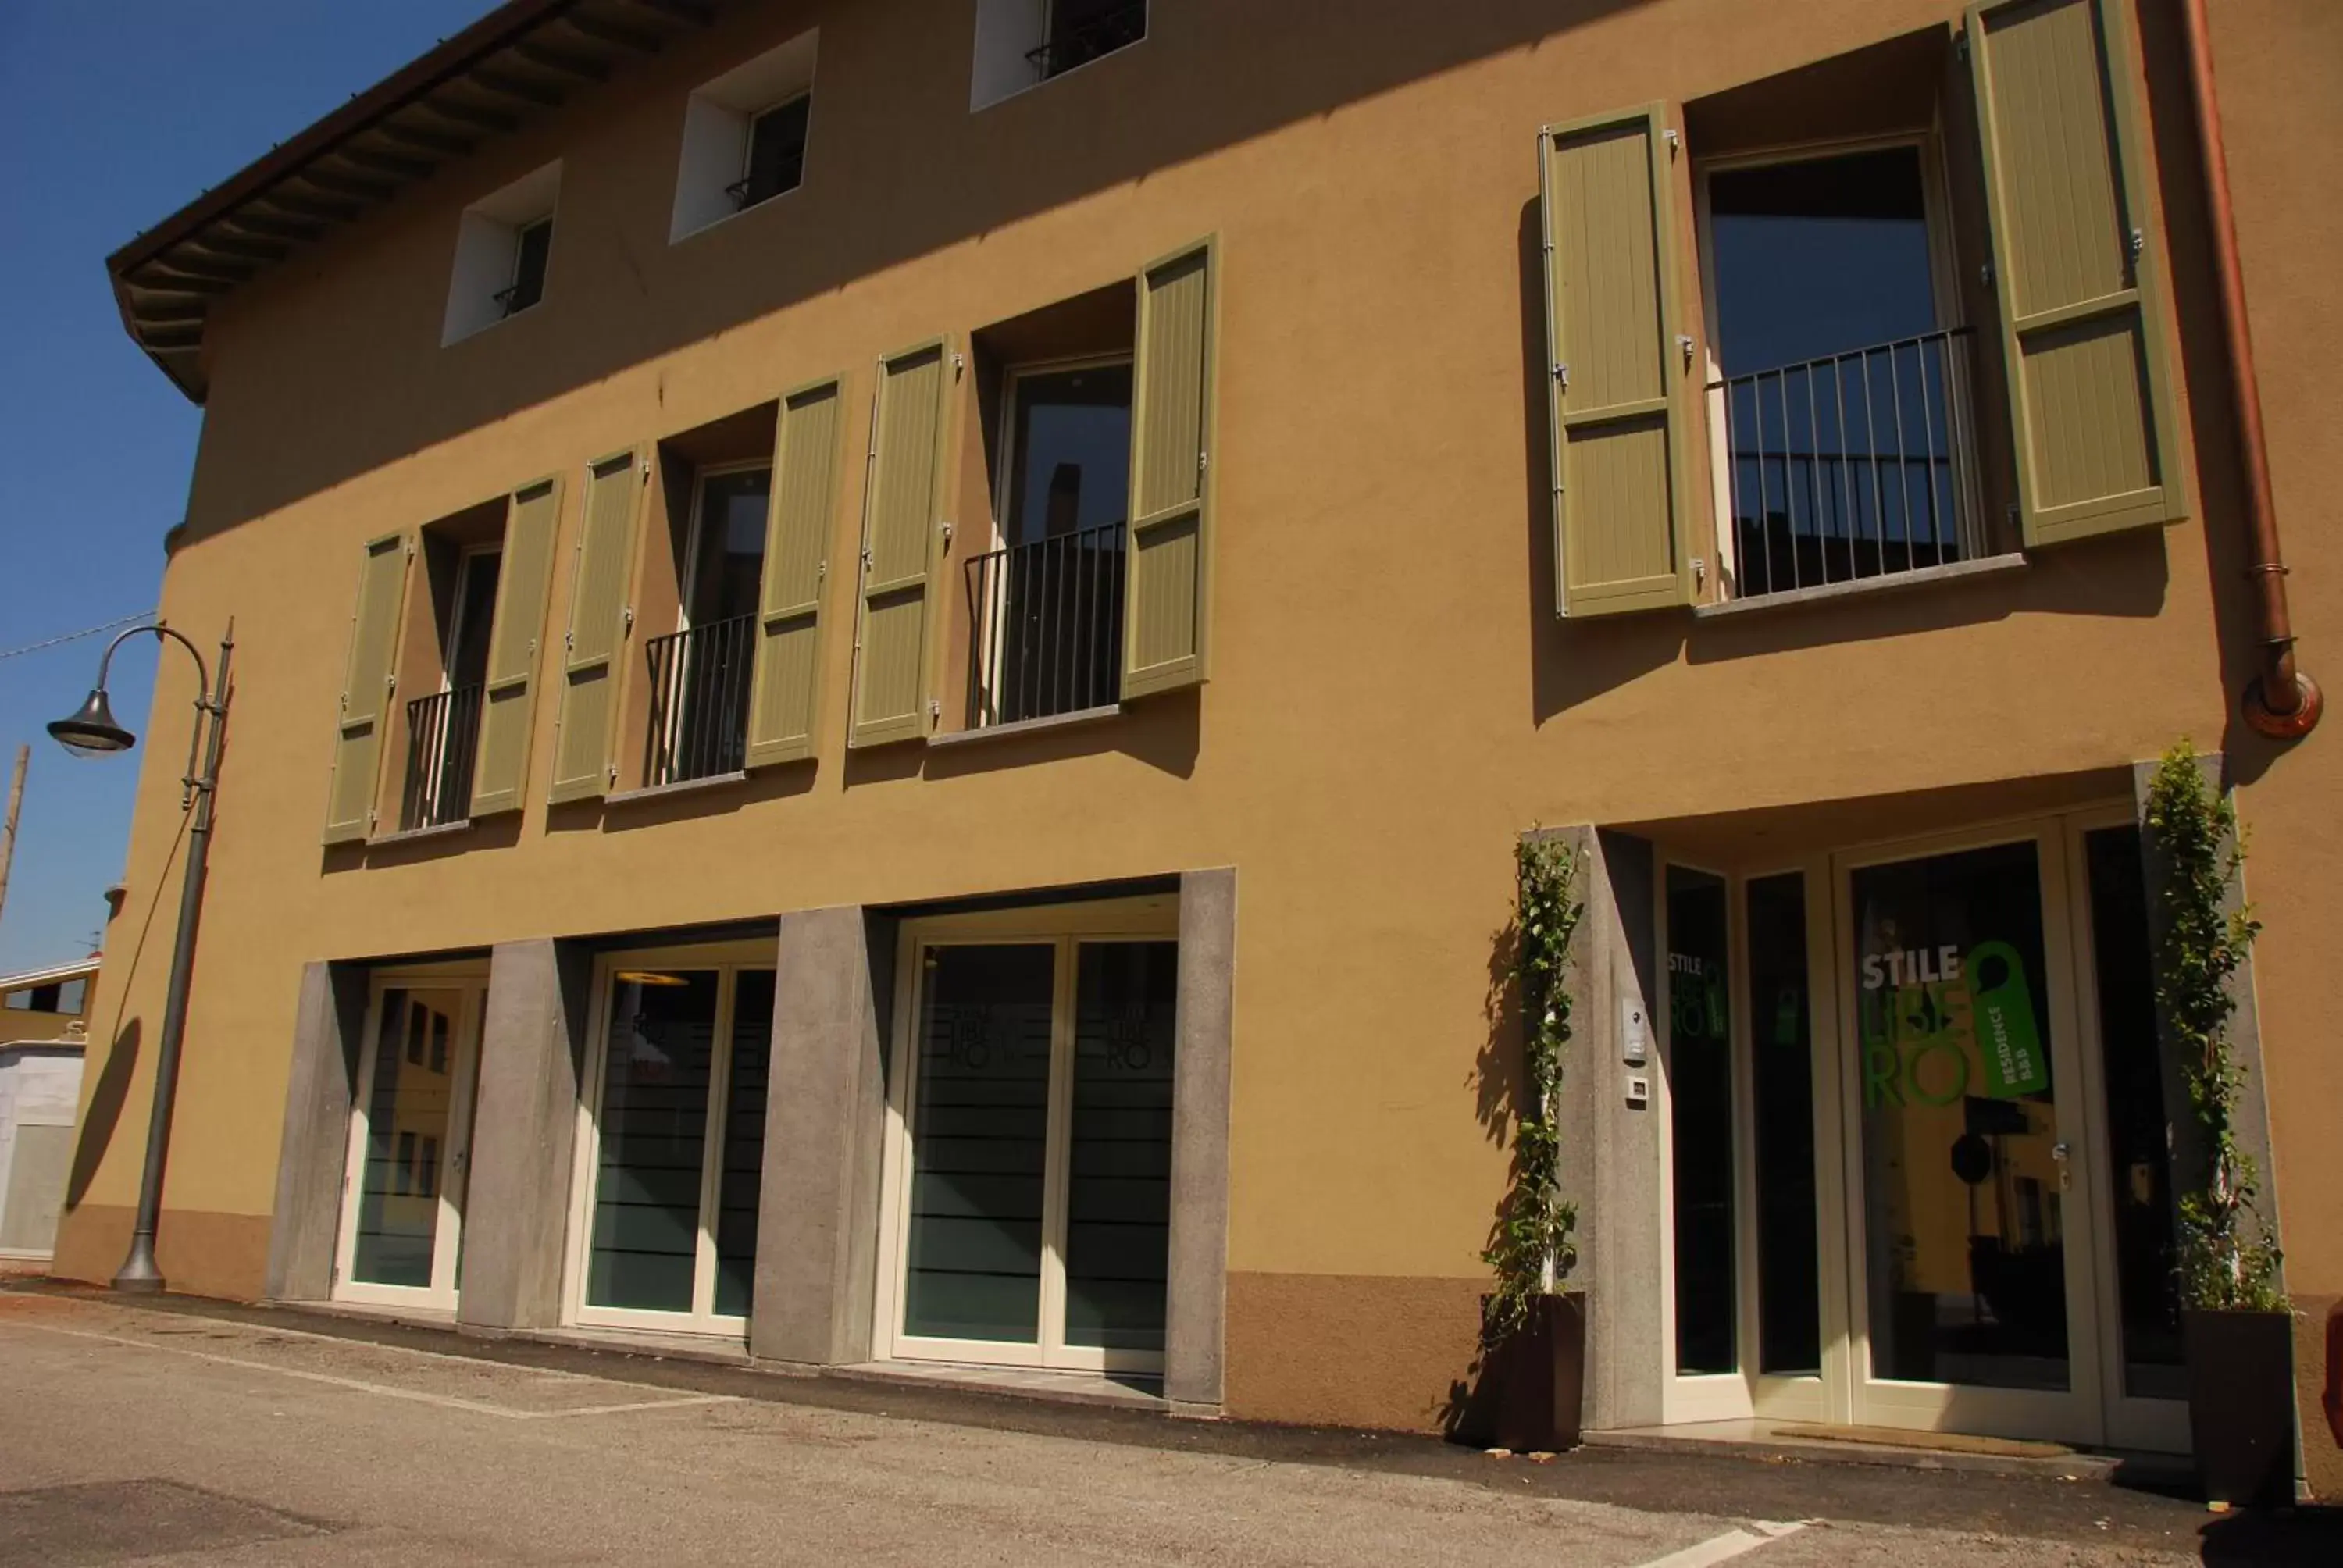 Facade/entrance, Property Building in Stile Libero